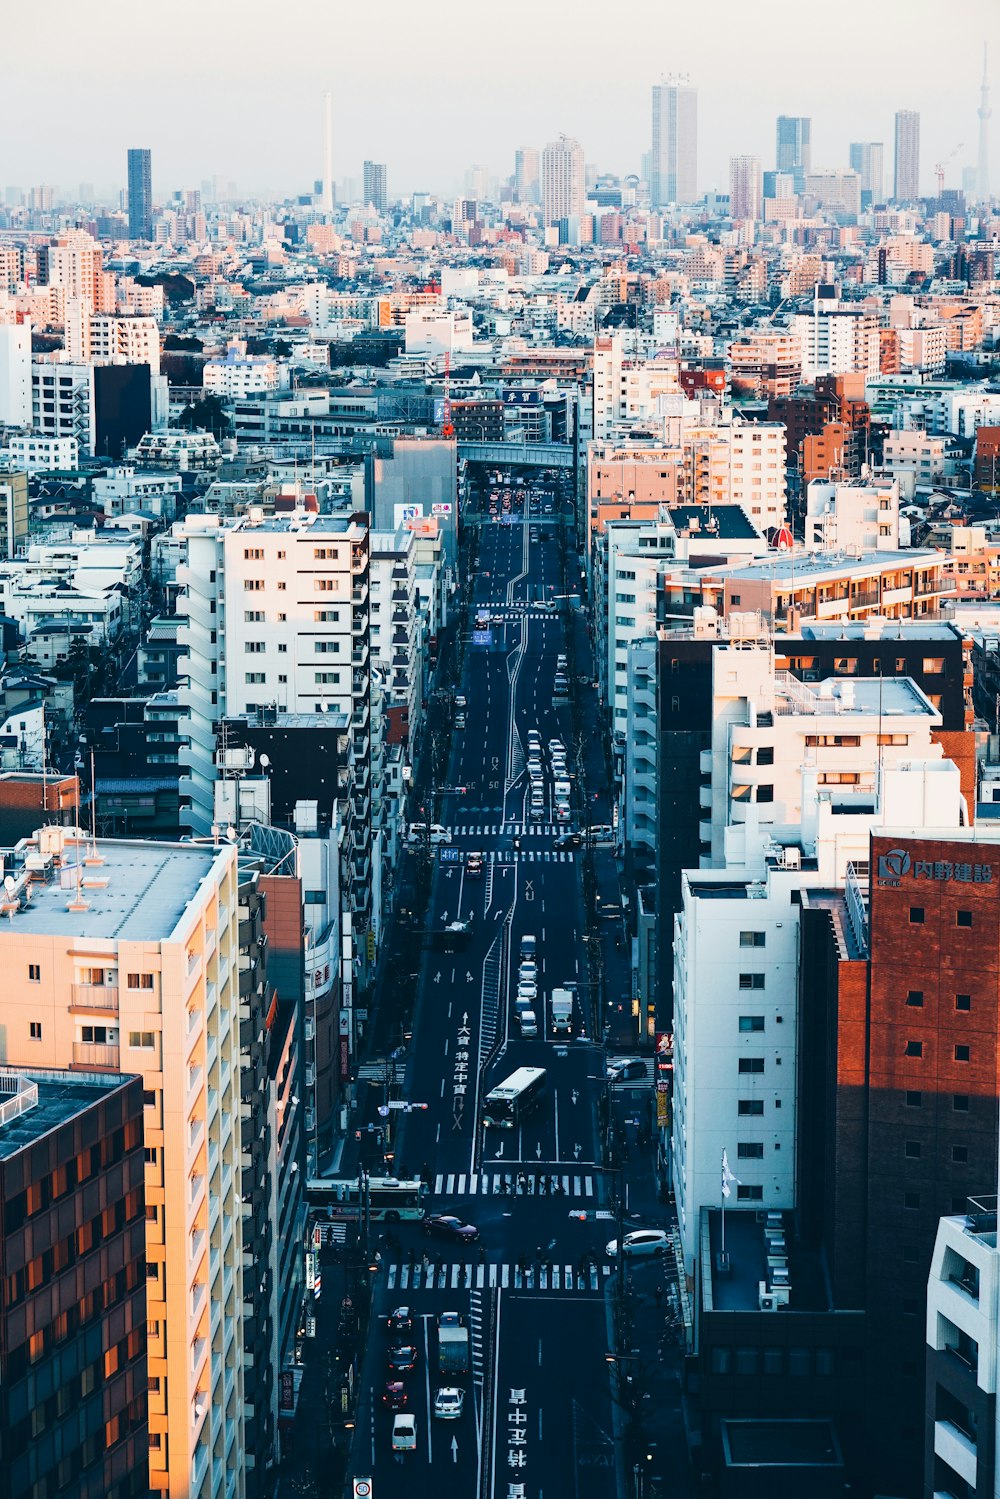 fotografia aerea del paesaggio urbano